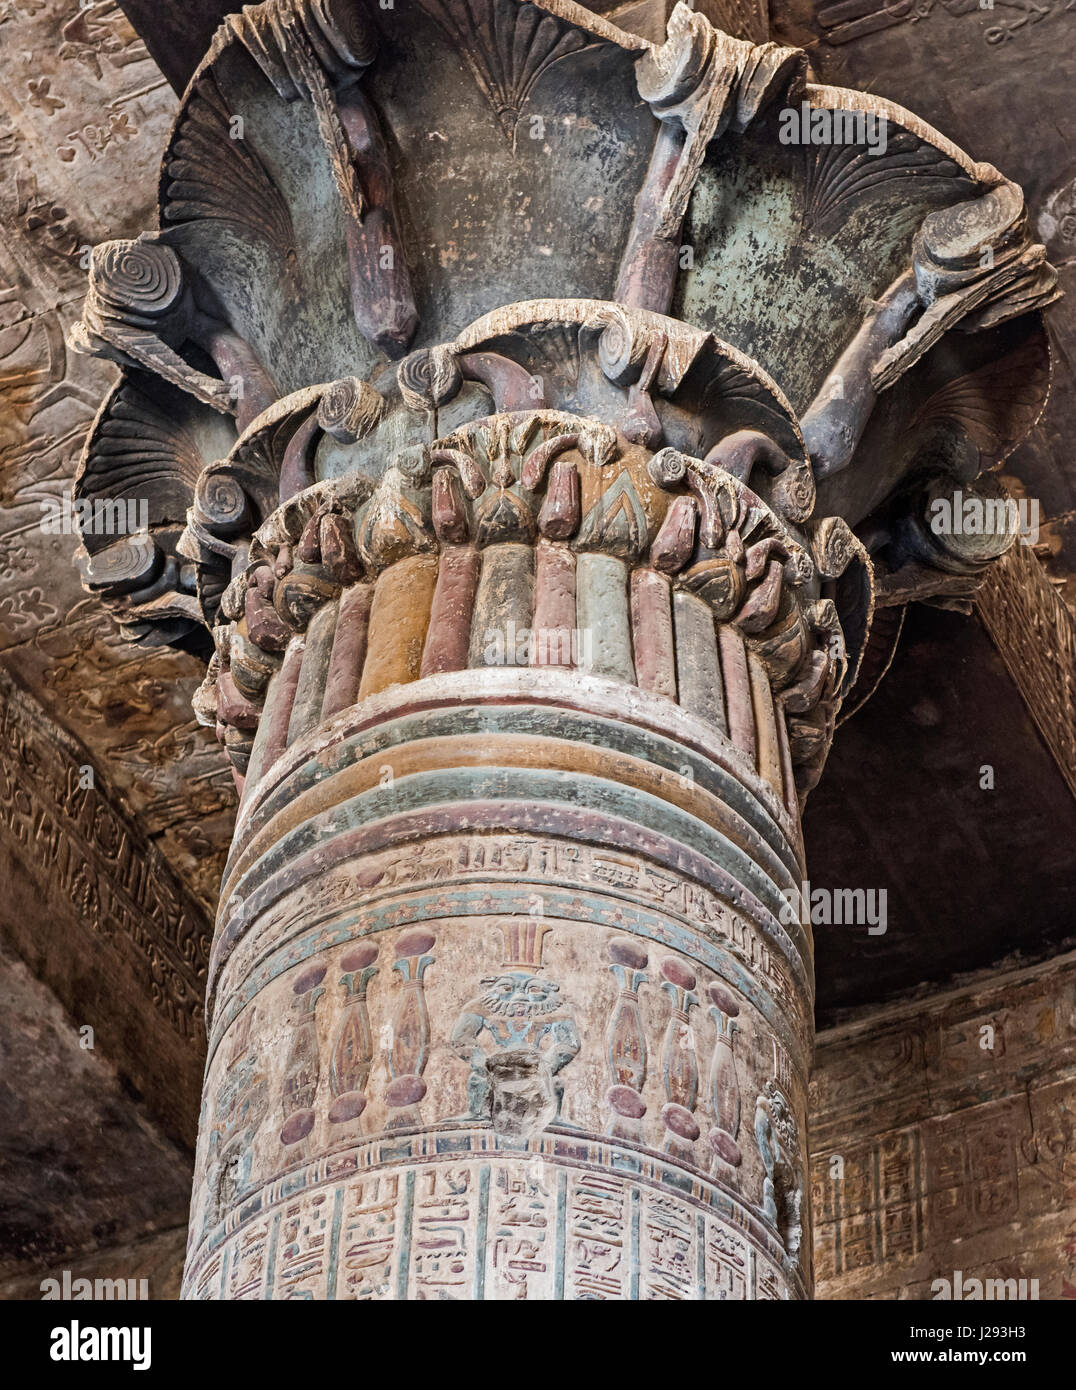 Colonnes de l'ancien temple égyptien de khnoum à esna avec sculptures hiéroglyphiques peints montrant le dieu bes Banque D'Images